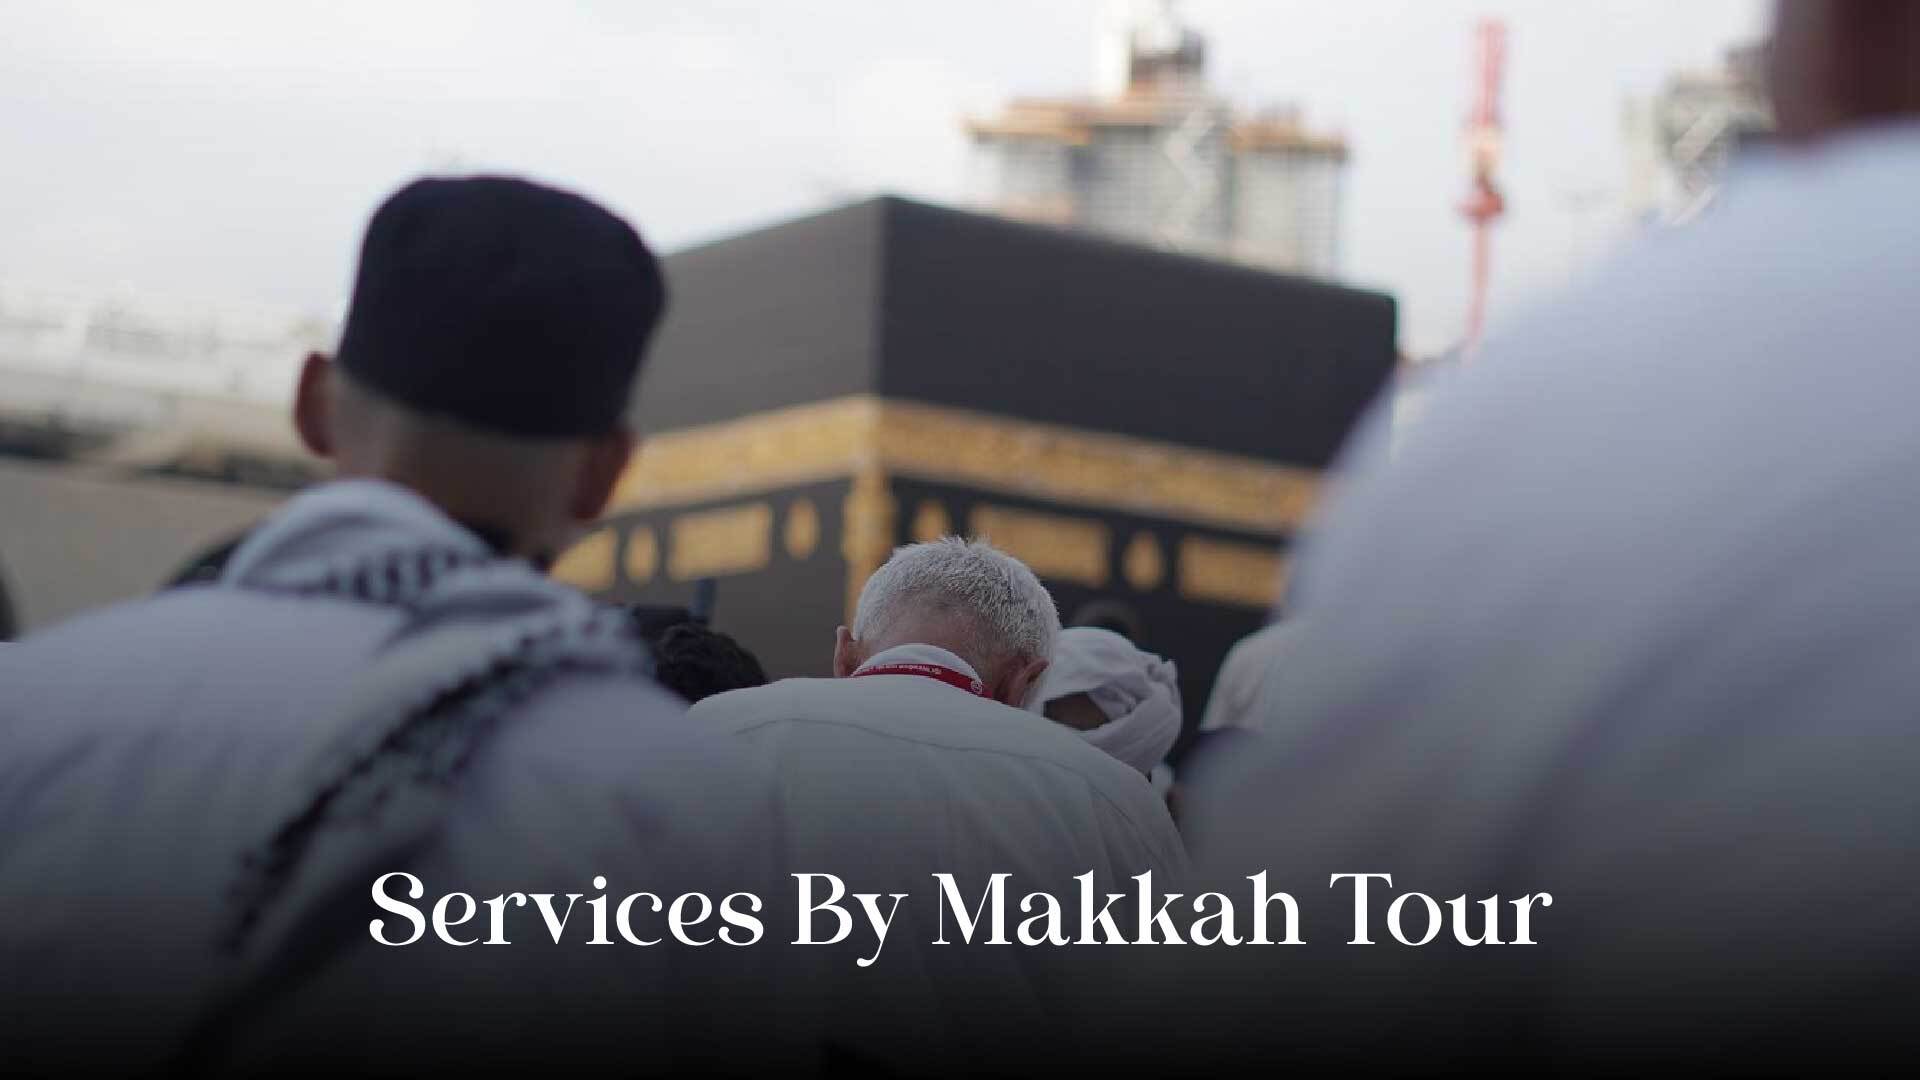 Makkah Tour Umrah providing Services